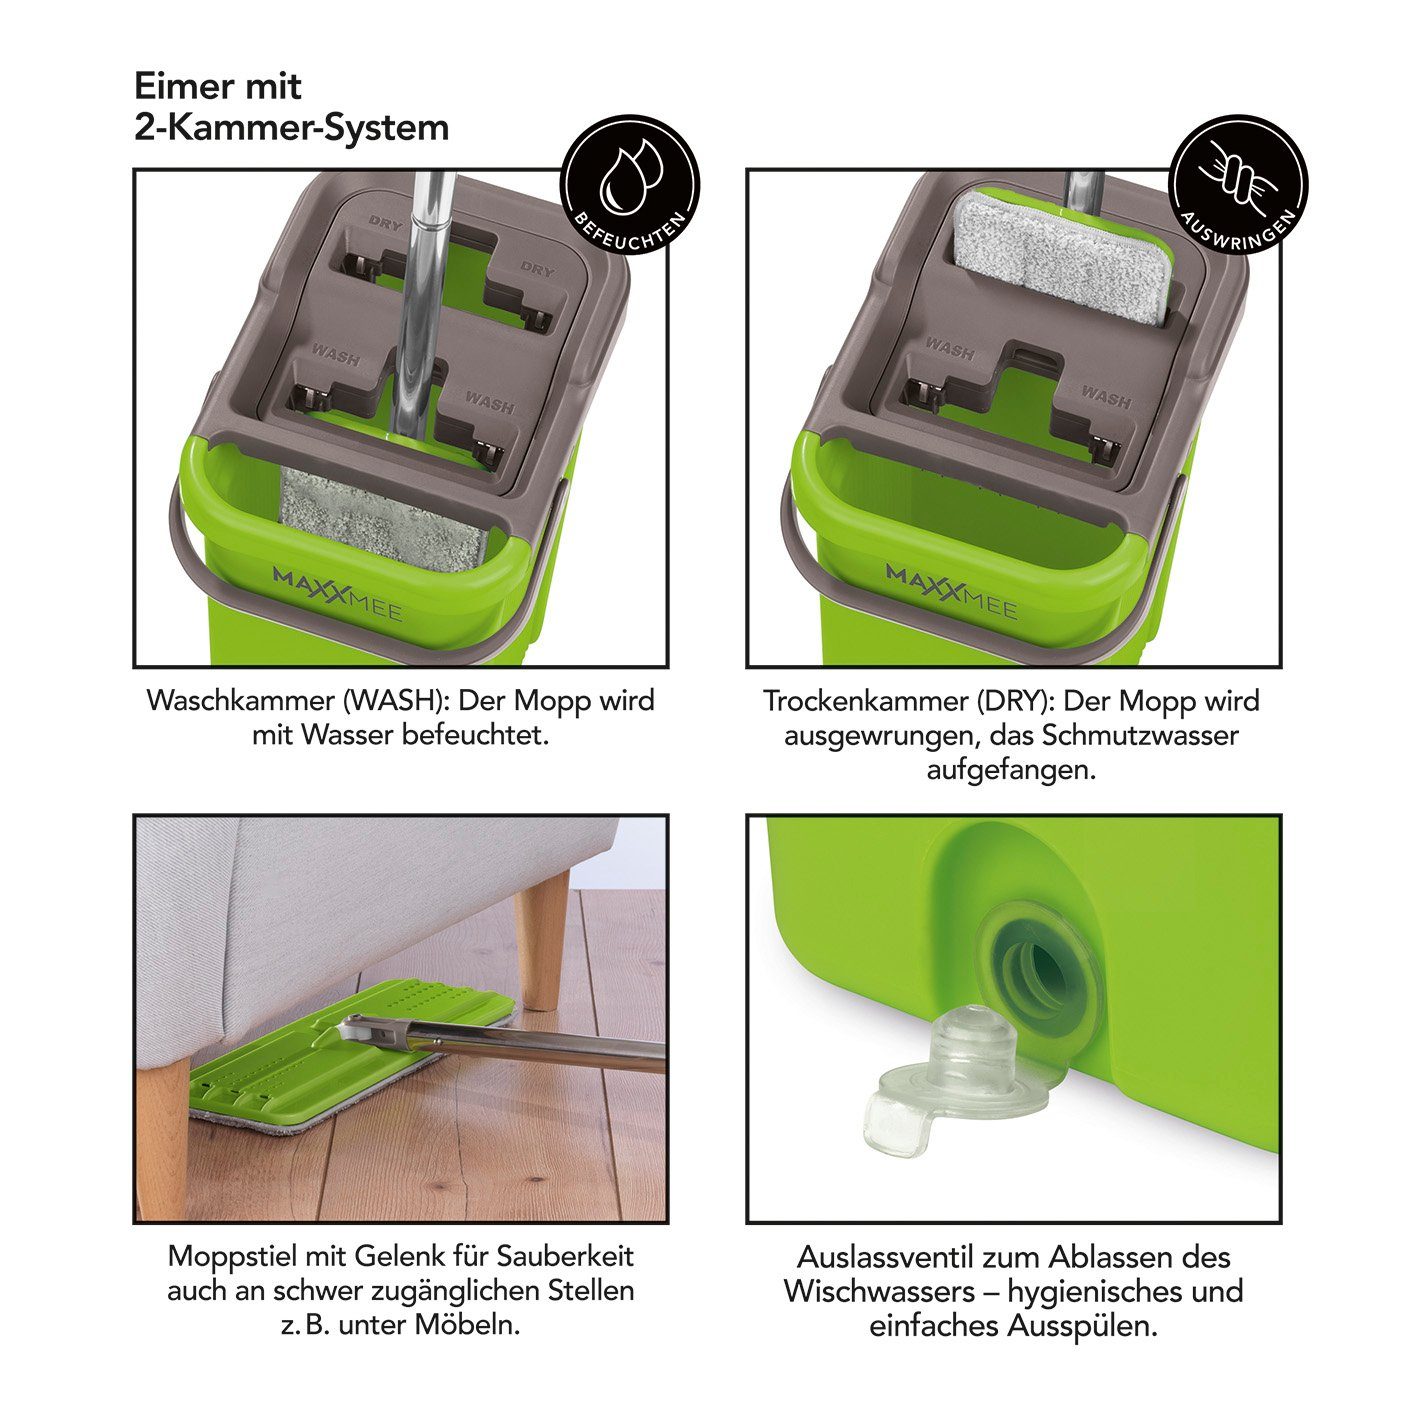 MAXXMEE Wischmopp Komfort-Mopp limegreen - 7,5 l Smart - Eimer 2-Kammer-System Bodenwischer 